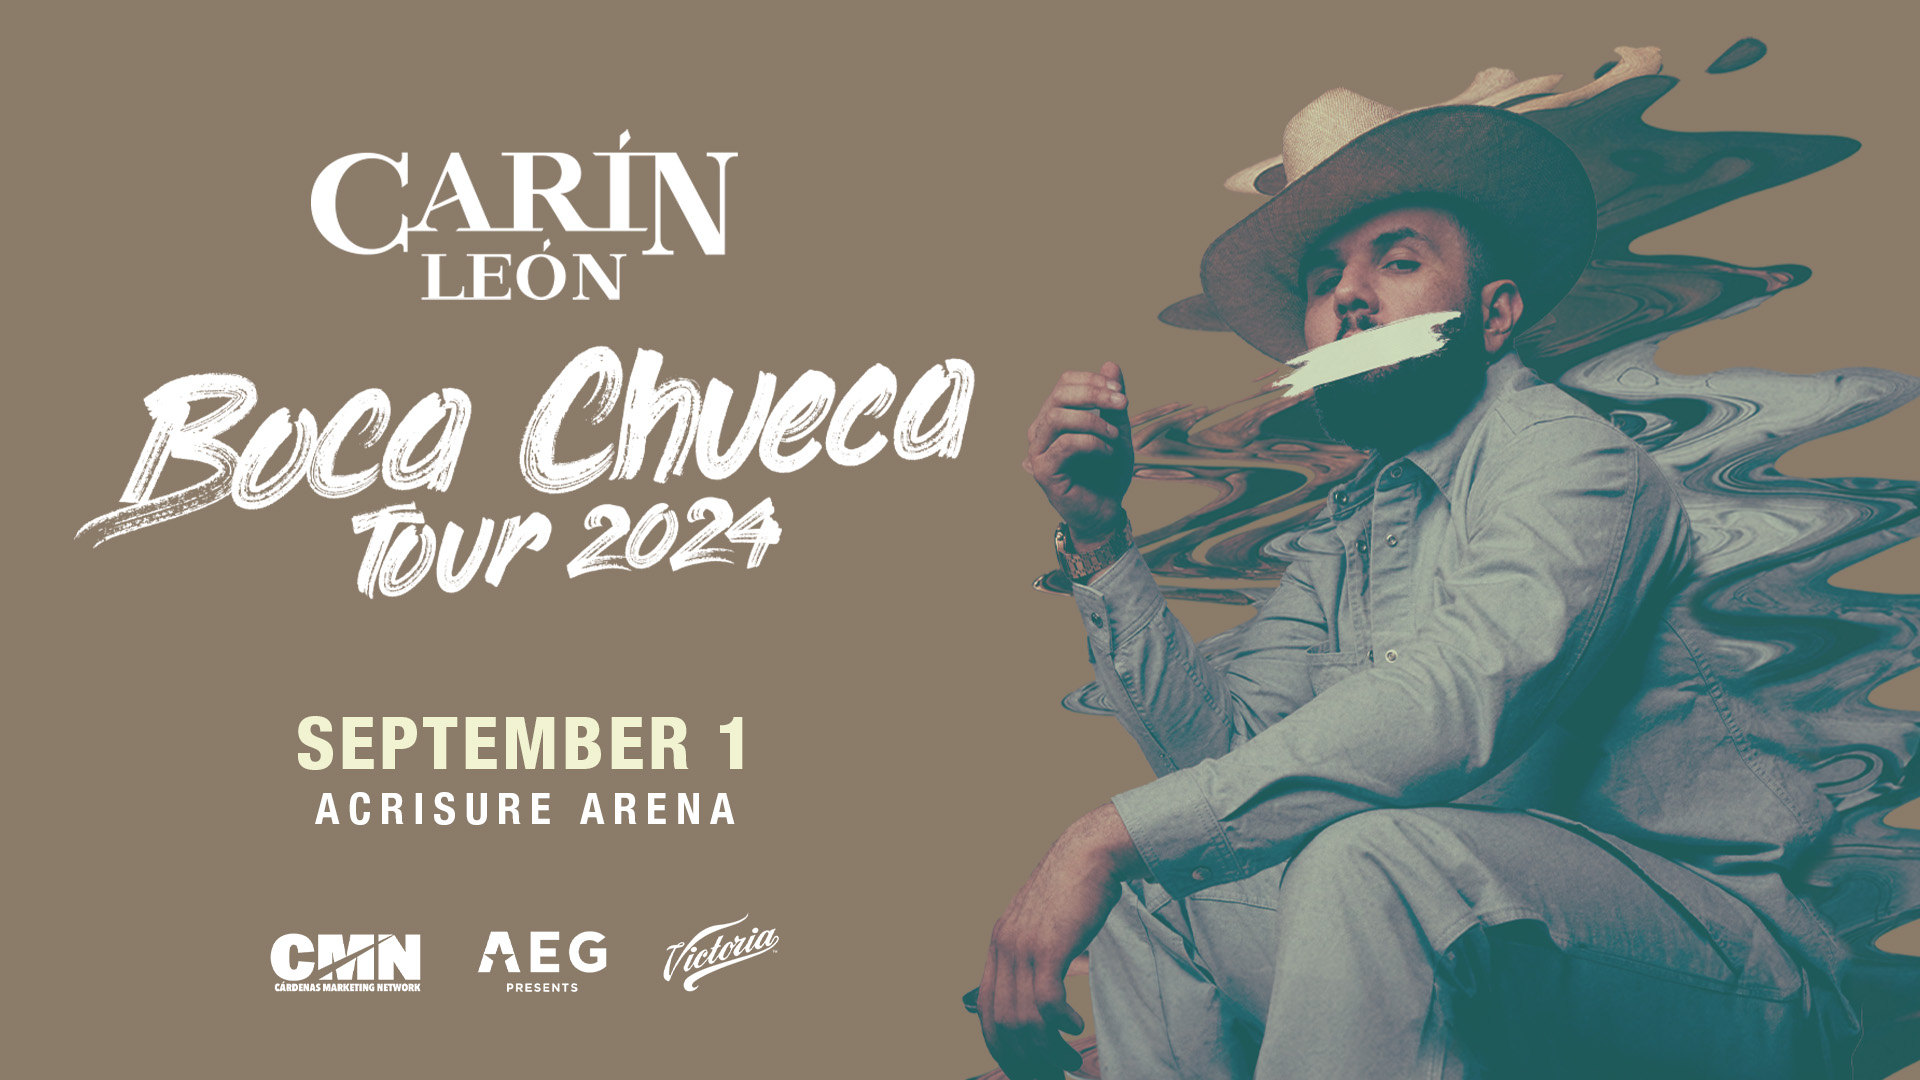 Carin León Announces “Boca Chueca Tour 2024” Acrisure Arena